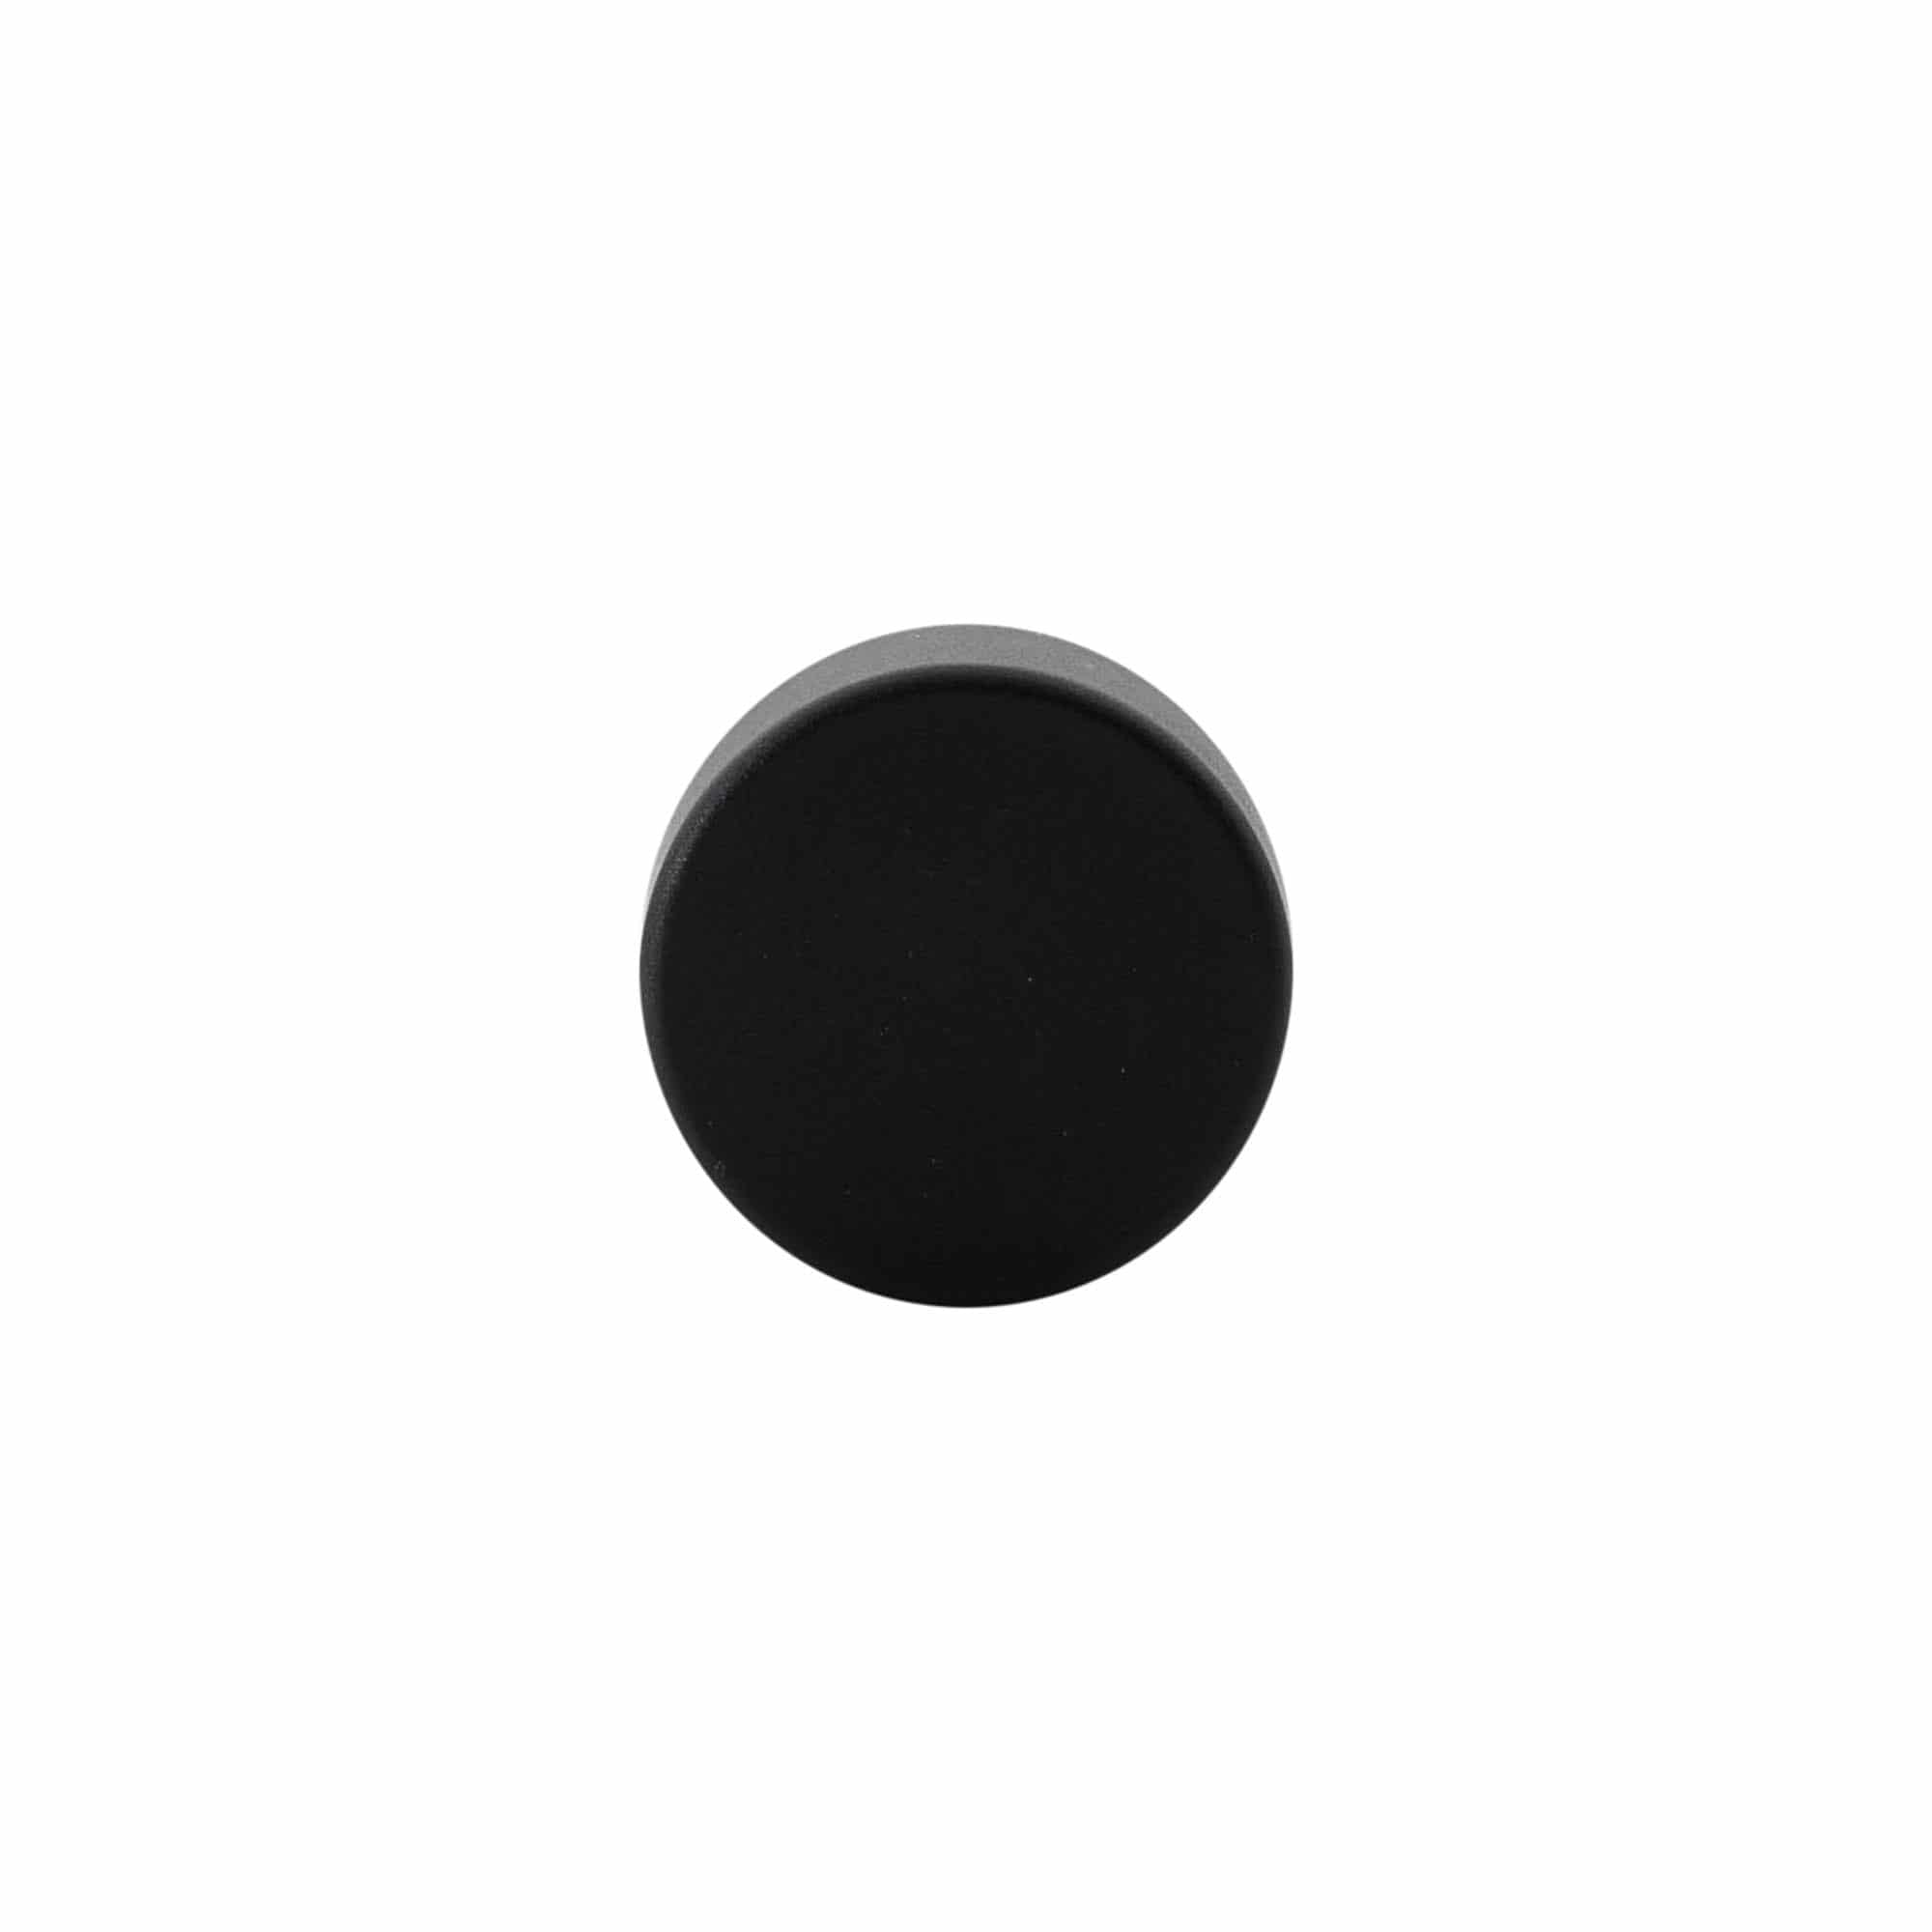 Dopkurk, 19 mm, kunststof, zwart, voor monding: kurk